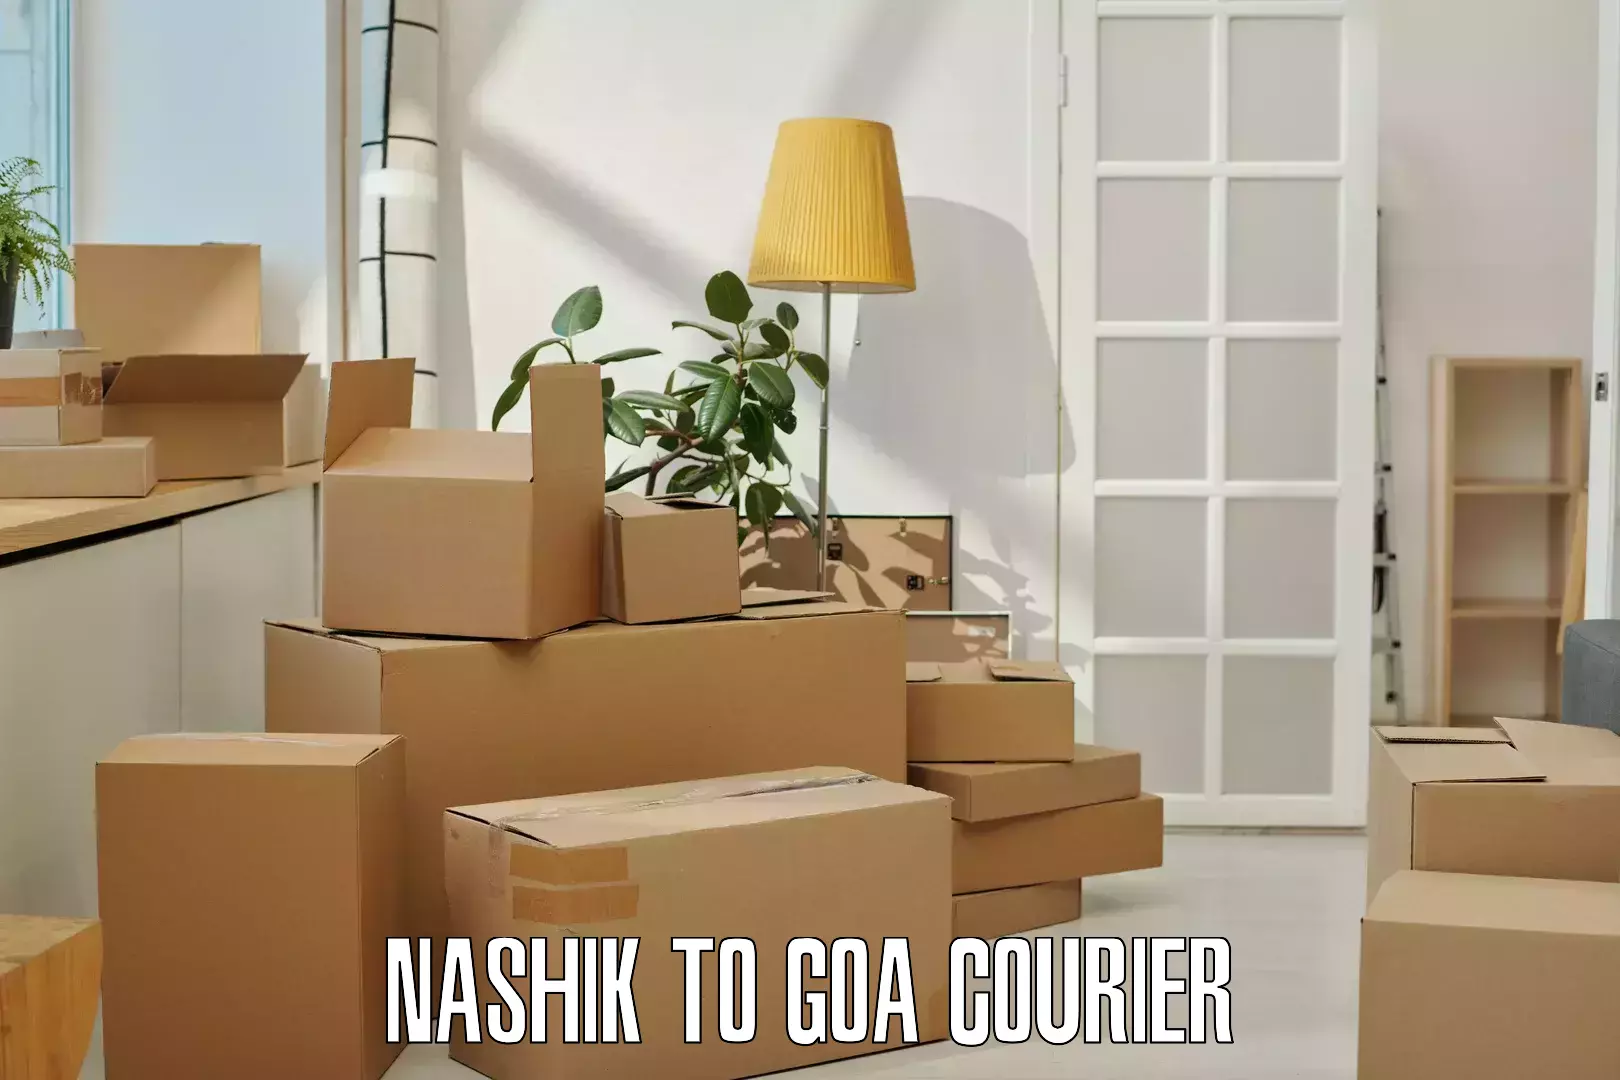 24-hour courier service Nashik to Panaji